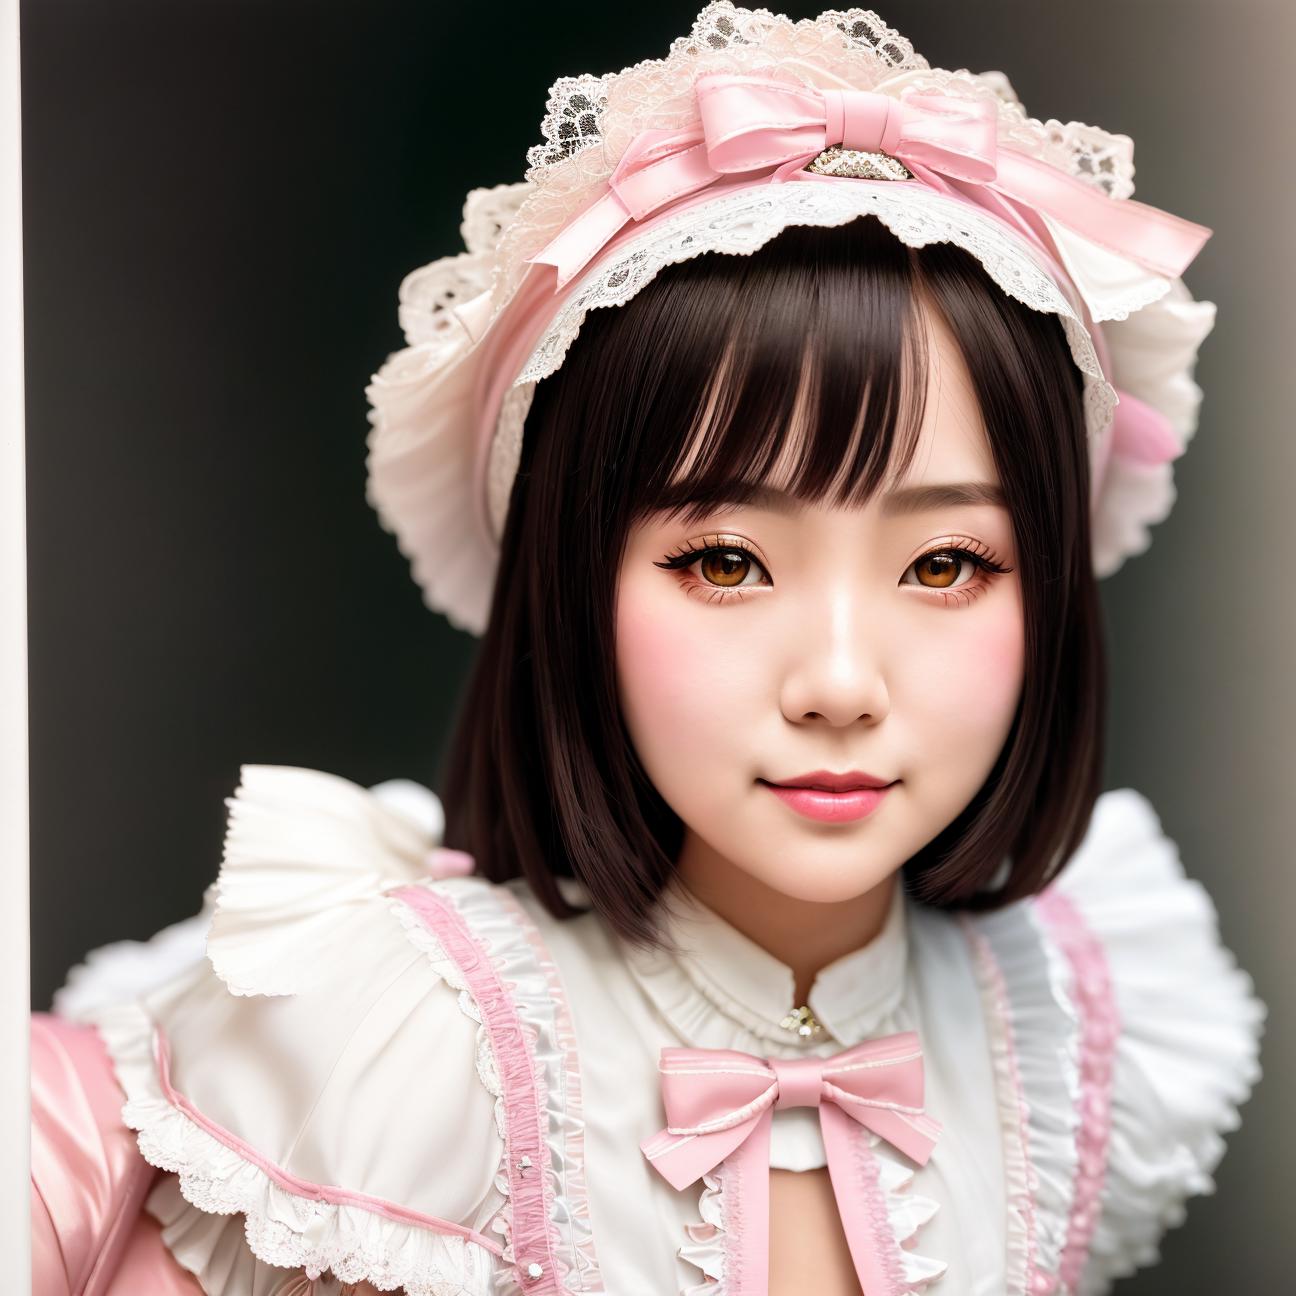 Harajuku Dolls image by EDG